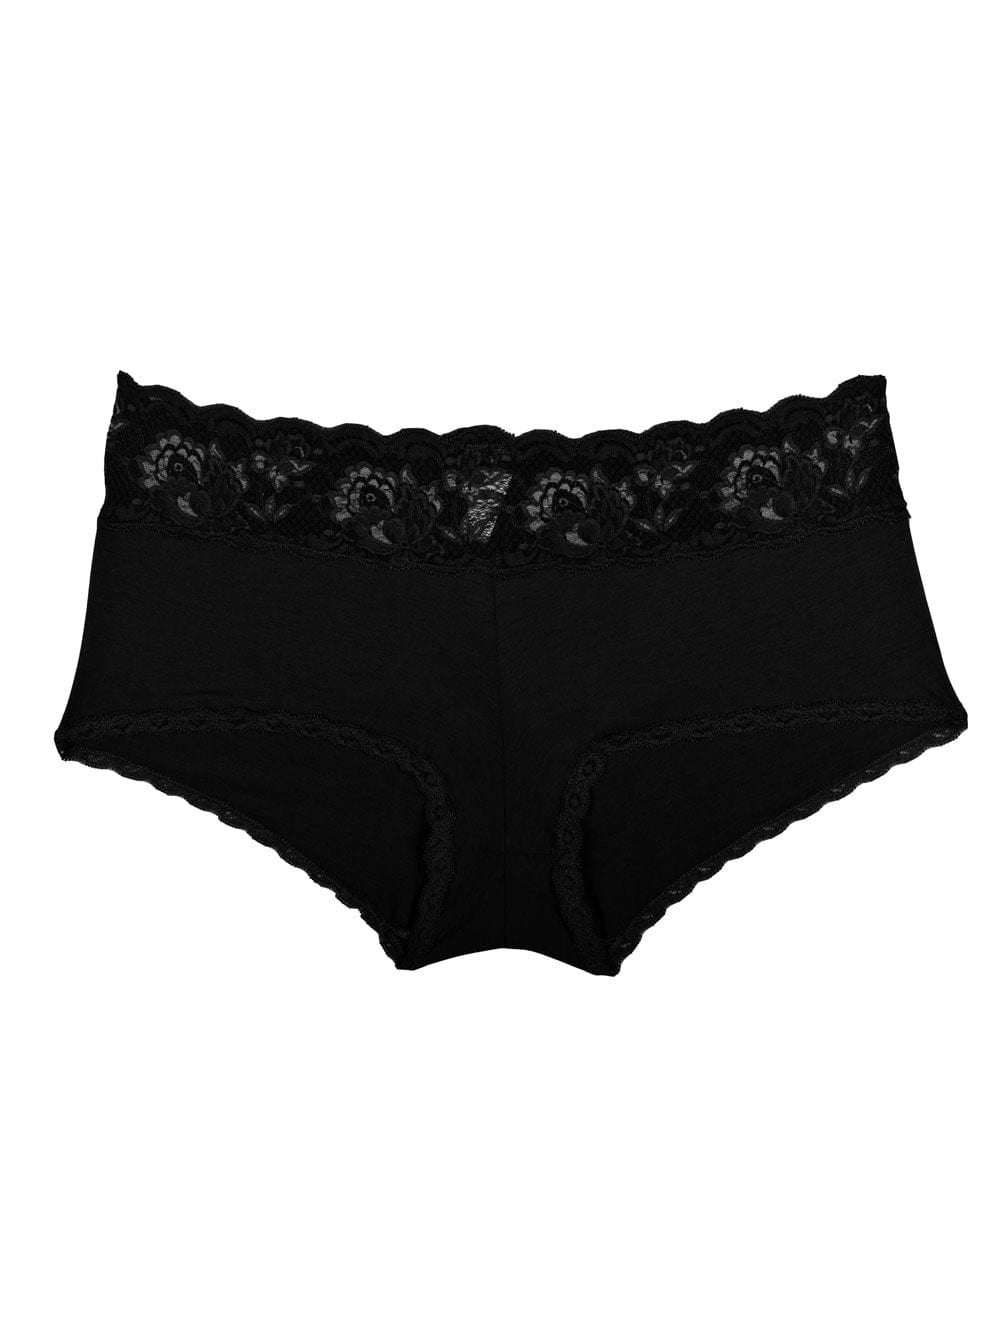 Cosabella lingerie for men - Lace men's briefs shop - BodywearStore